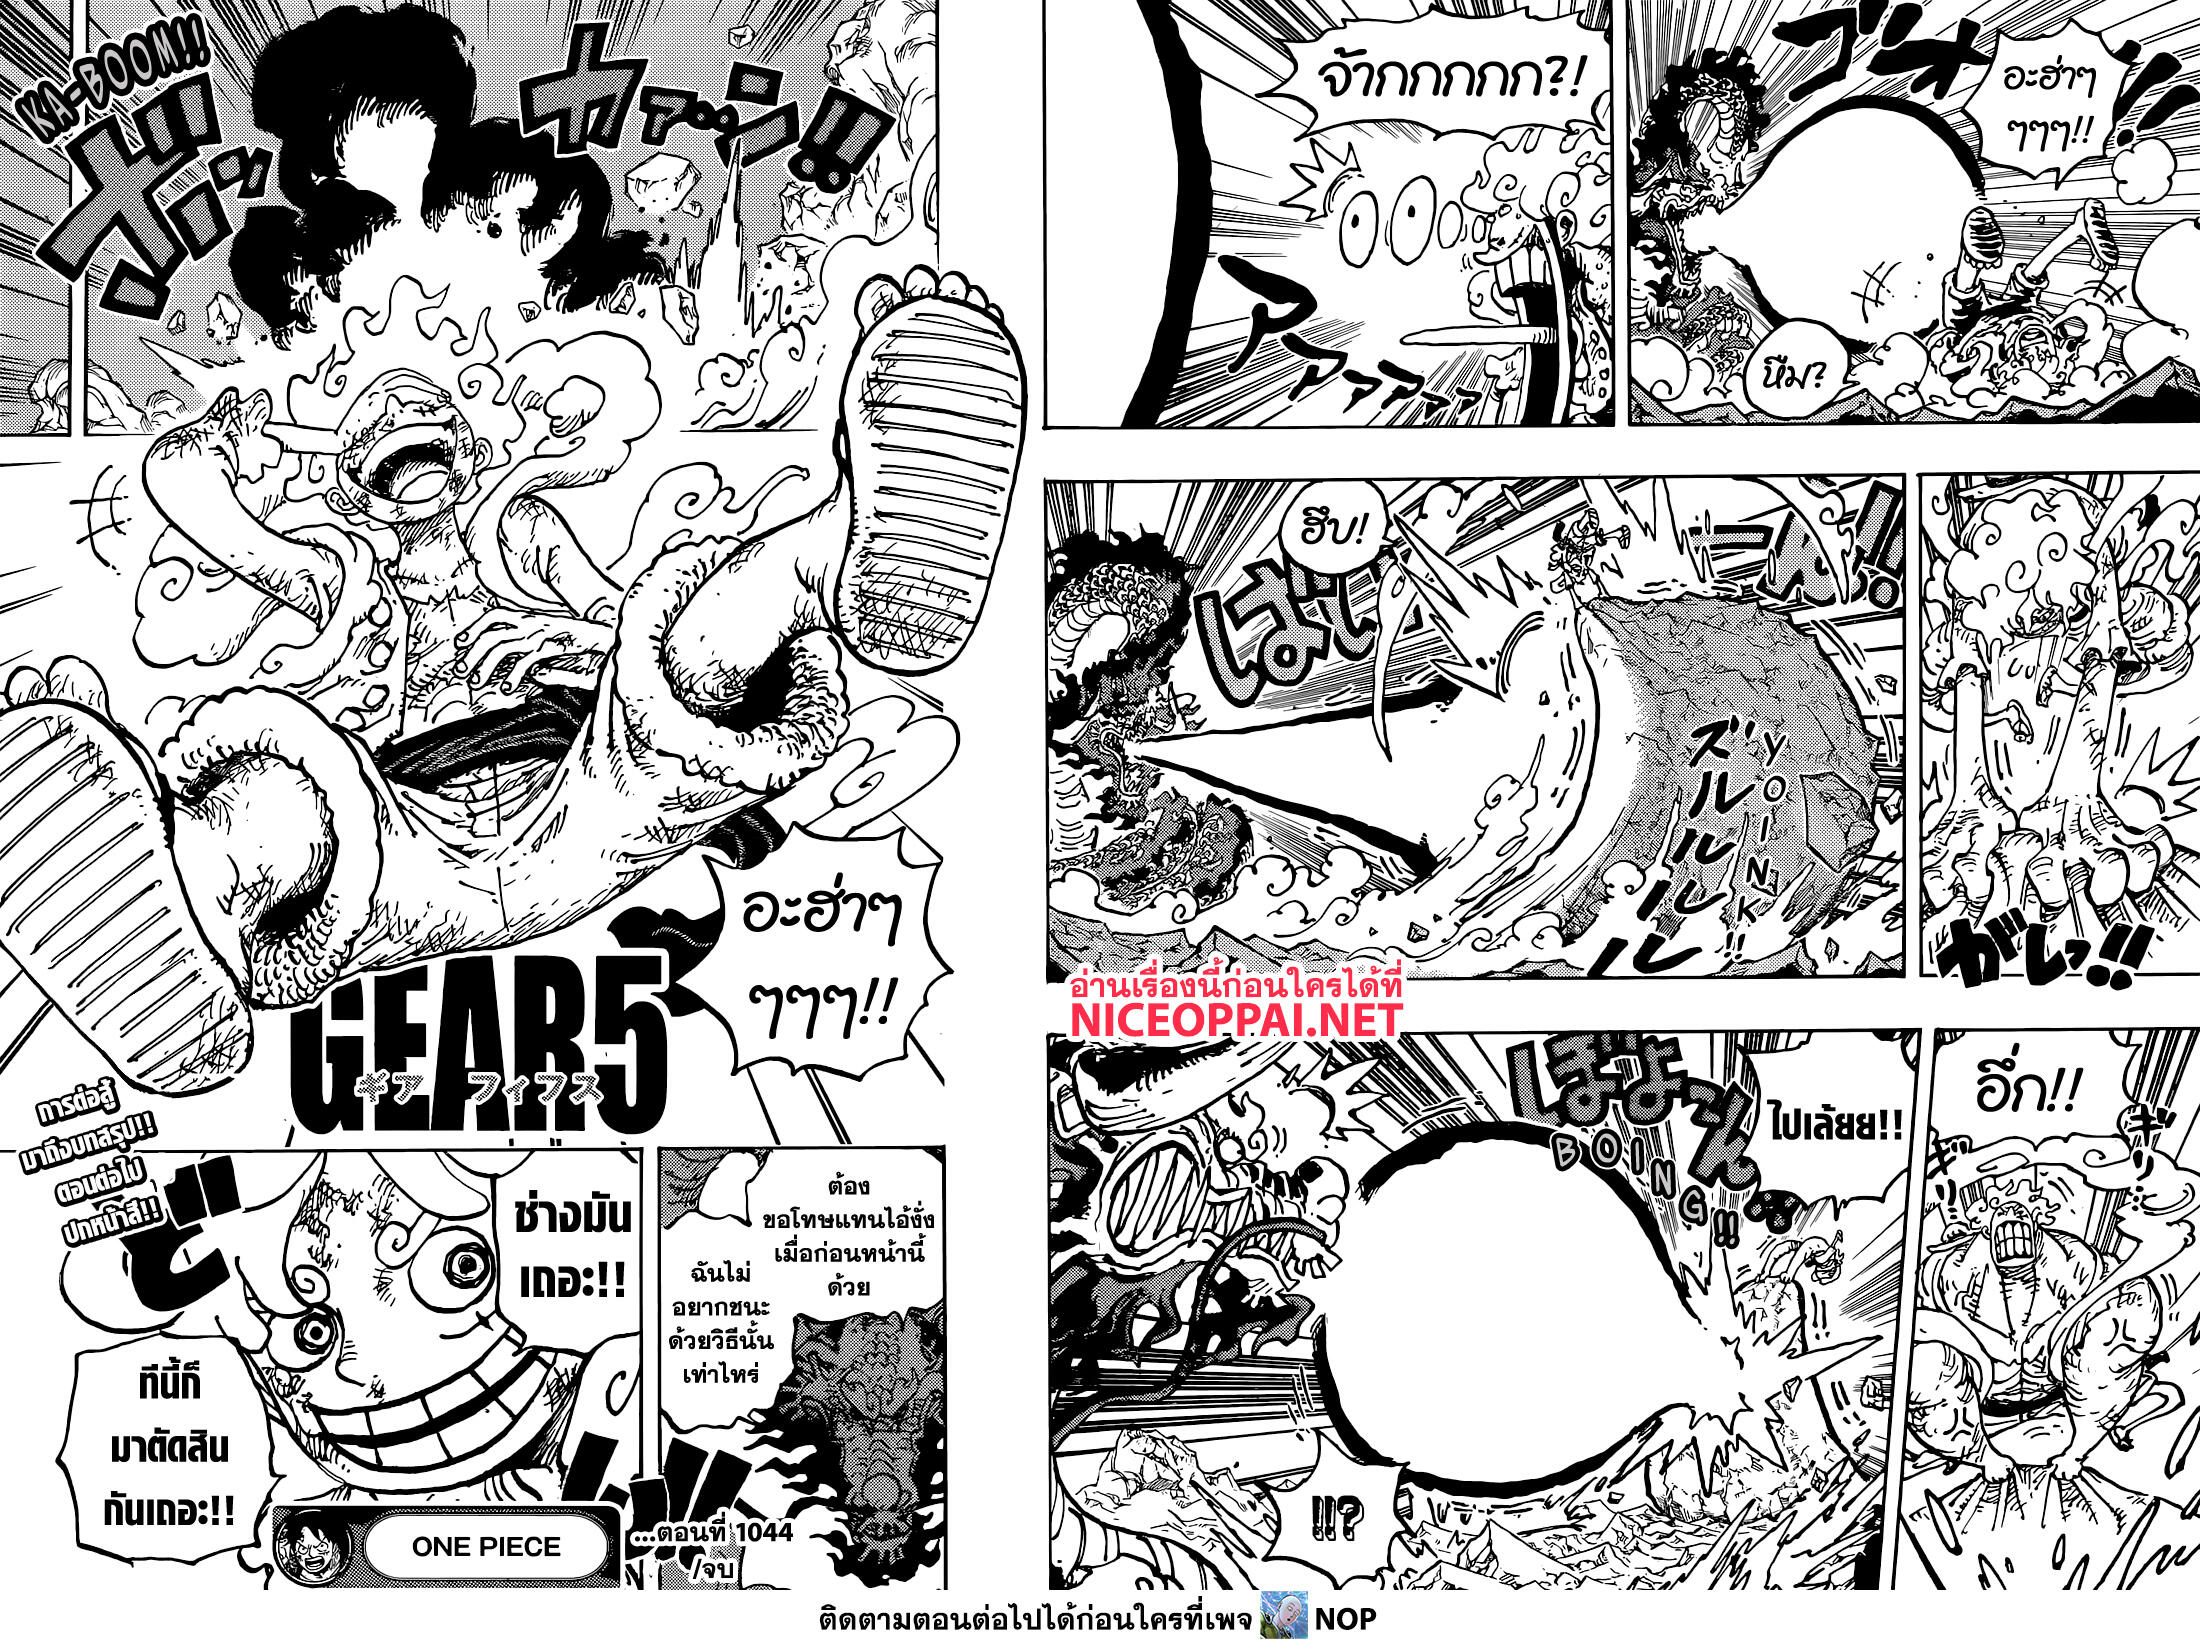 One Piece 1044-TH-นักรบผู้ปลดปล่อย